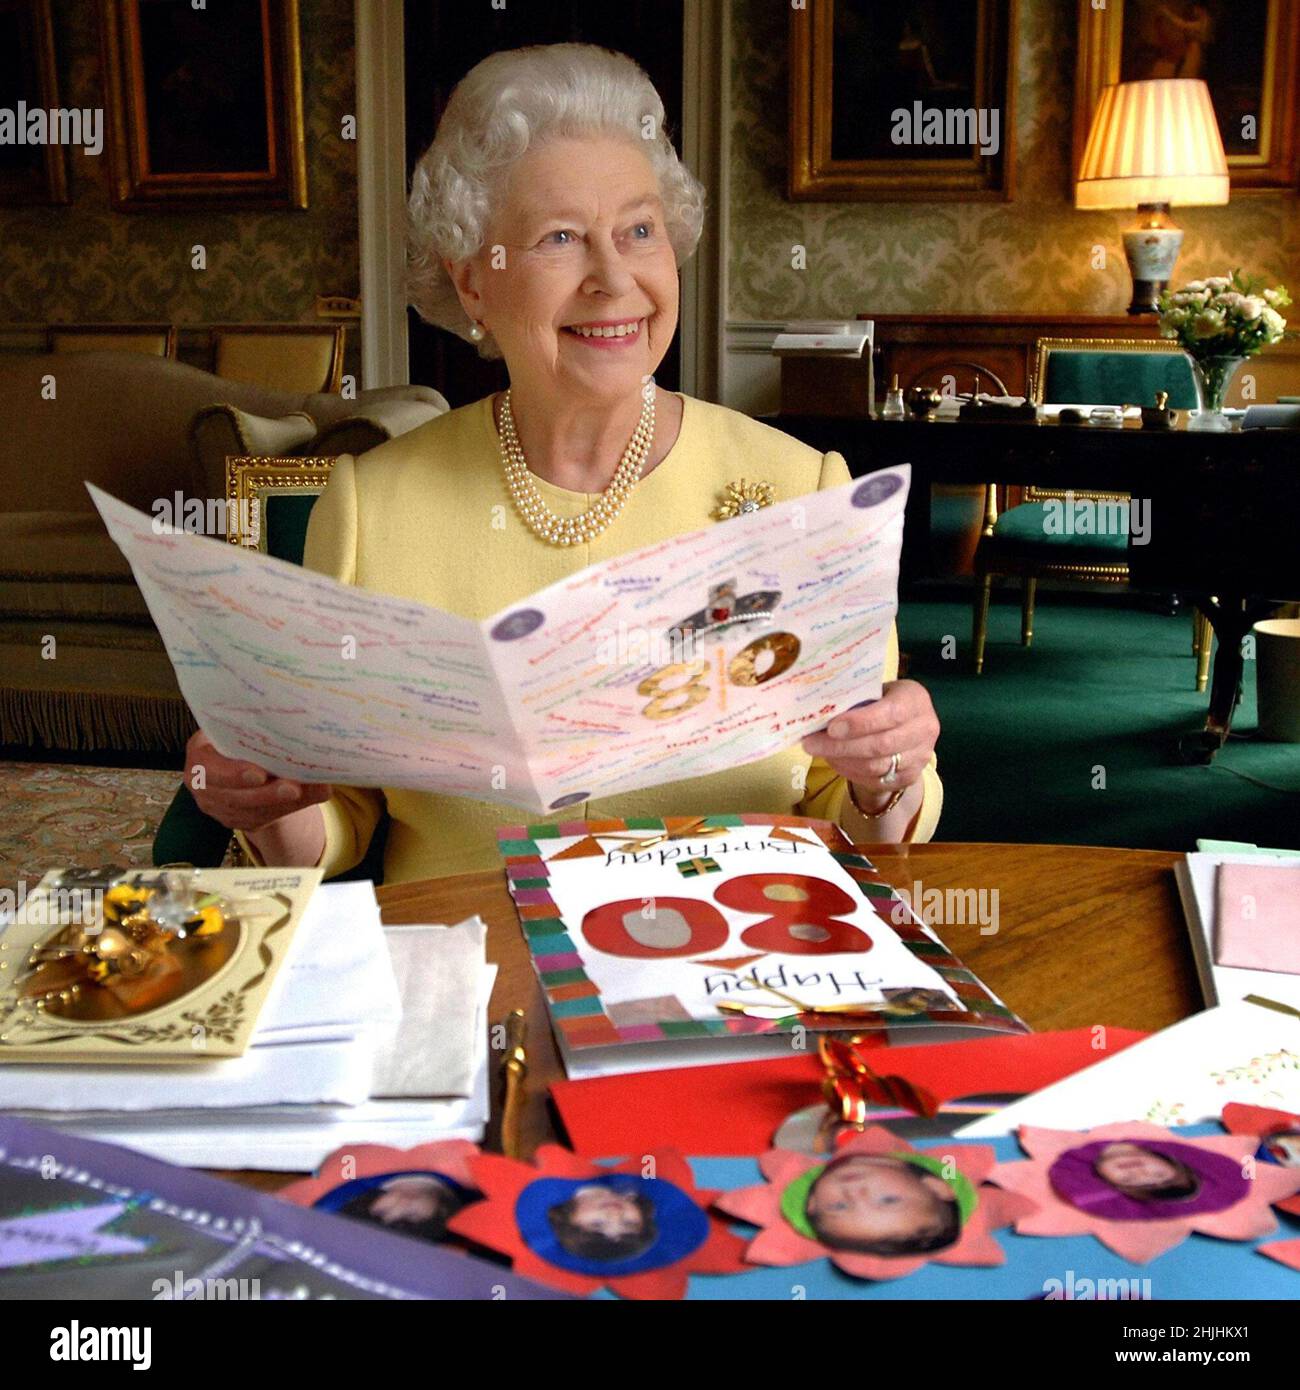 Foto del archivo fechada el 20/04/06 de la Reina Isabel II sentada en la Sala Regency en el Palacio de Buckingham en Londres mirando algunas de las tarjetas que le han sido enviadas para su cumpleaños de 80th. Fecha de emisión: Domingo 30 de enero de 2022. Foto de stock